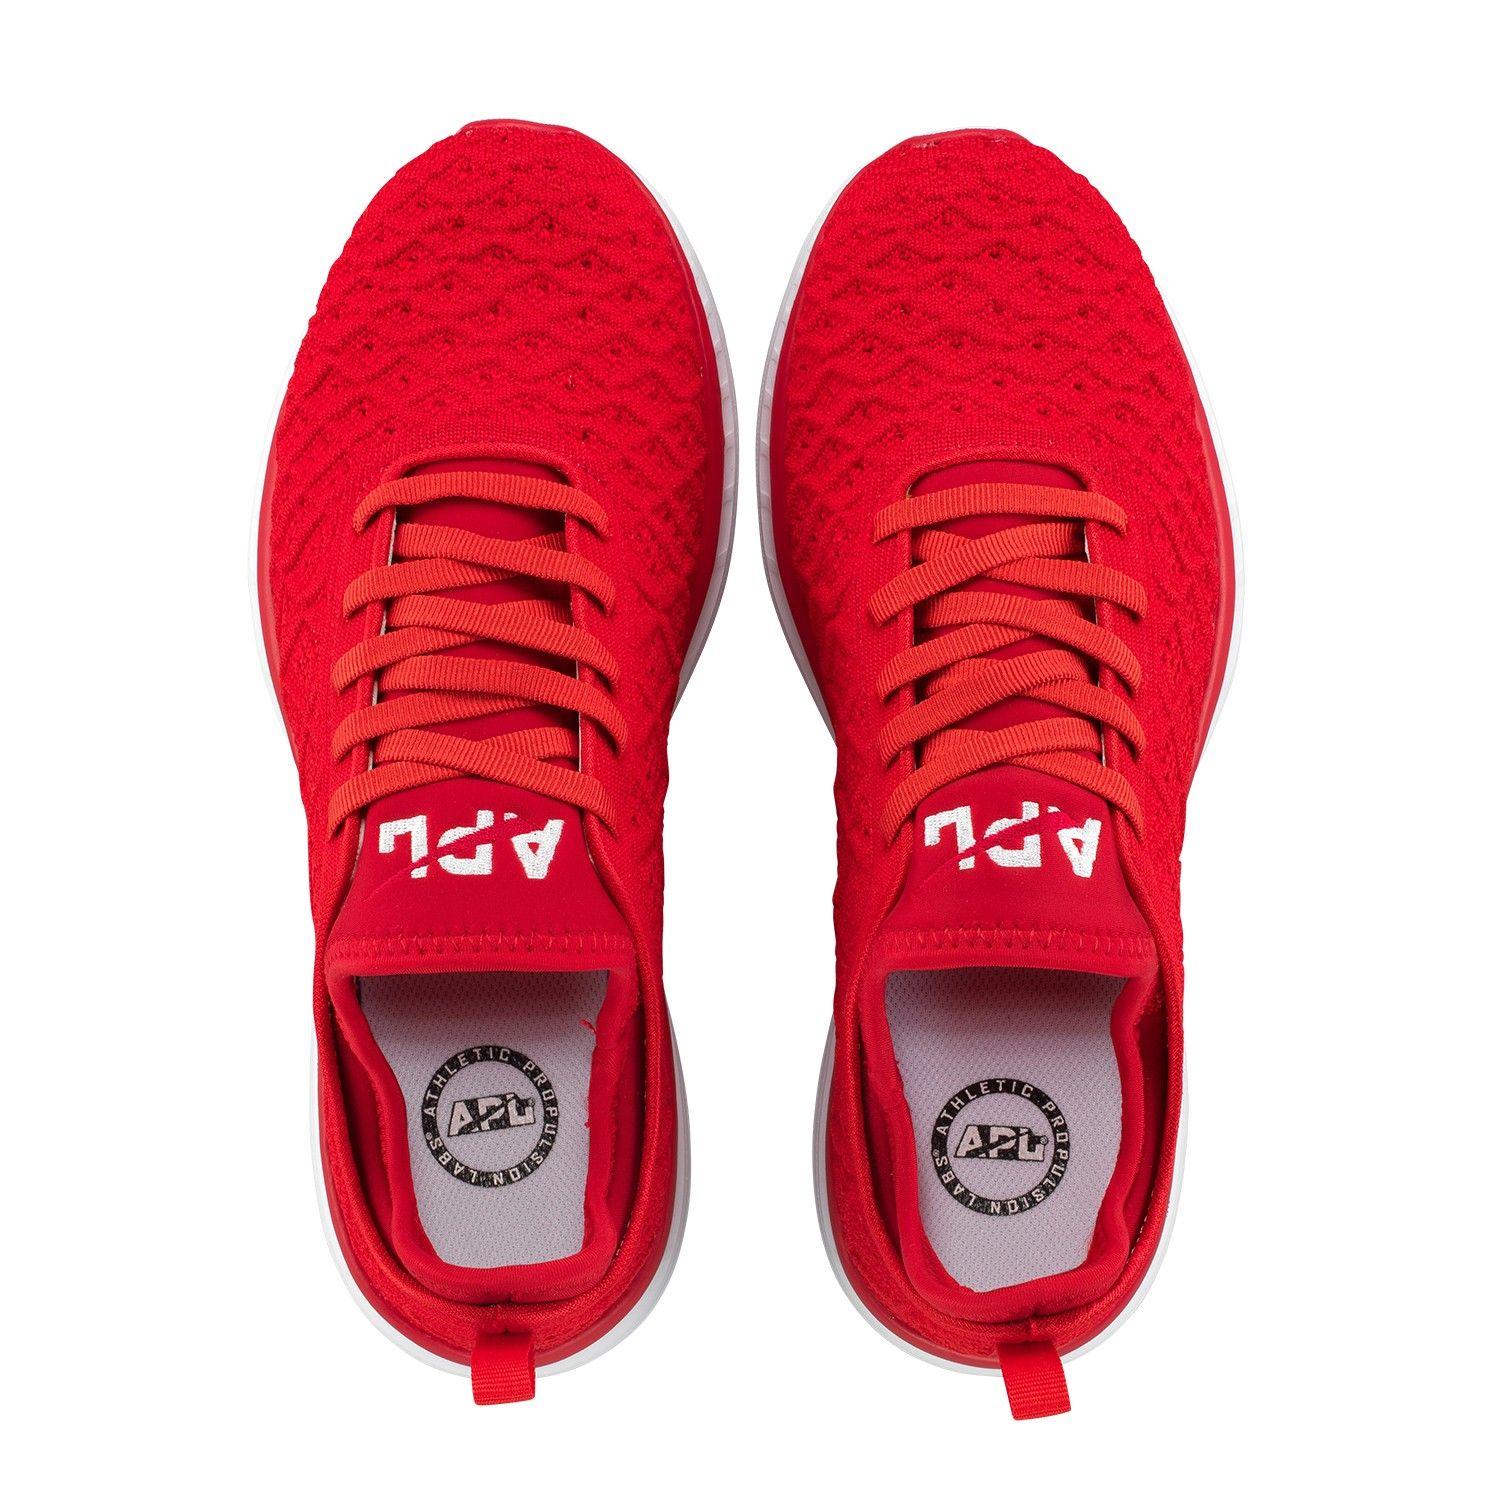 White and Red Shoe Logo - APL Women's Running Shoes TechLoom Phantom Red/White